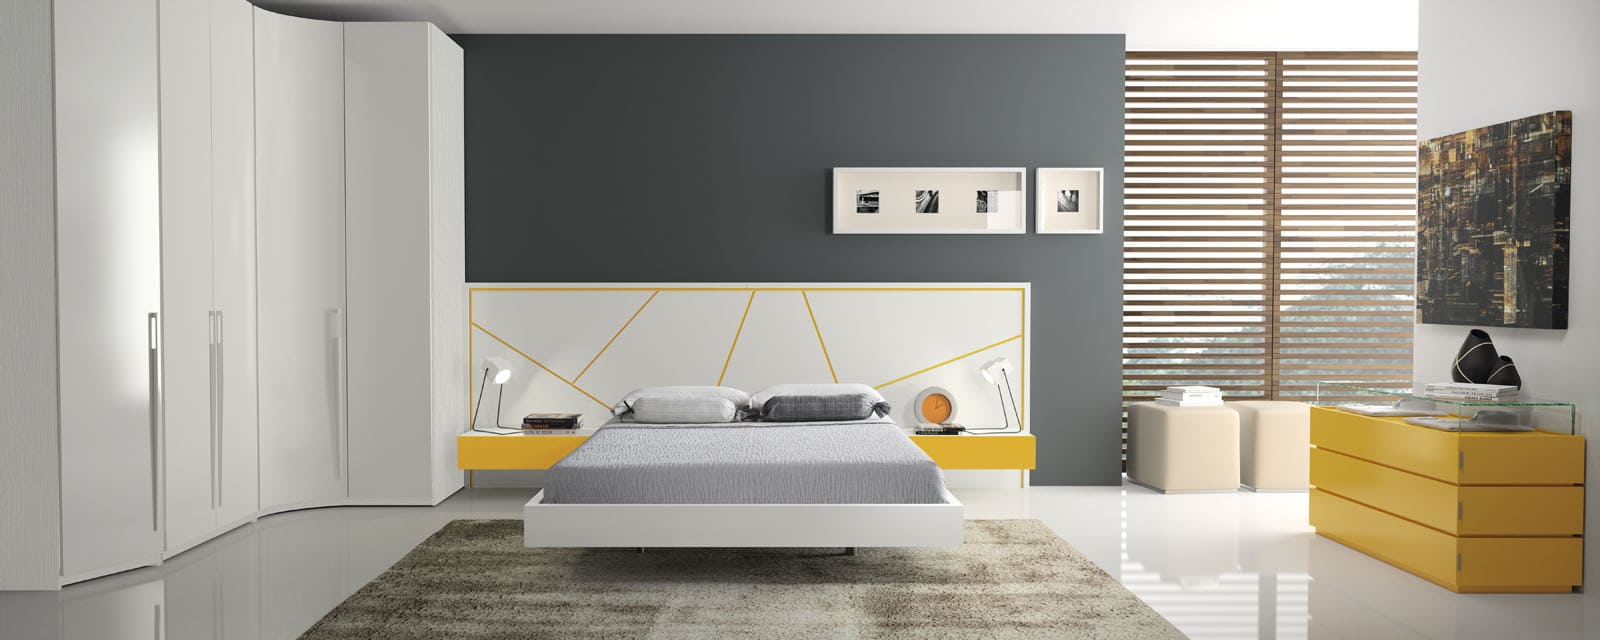 Dormitorio Distintos Colores - MakroMueble